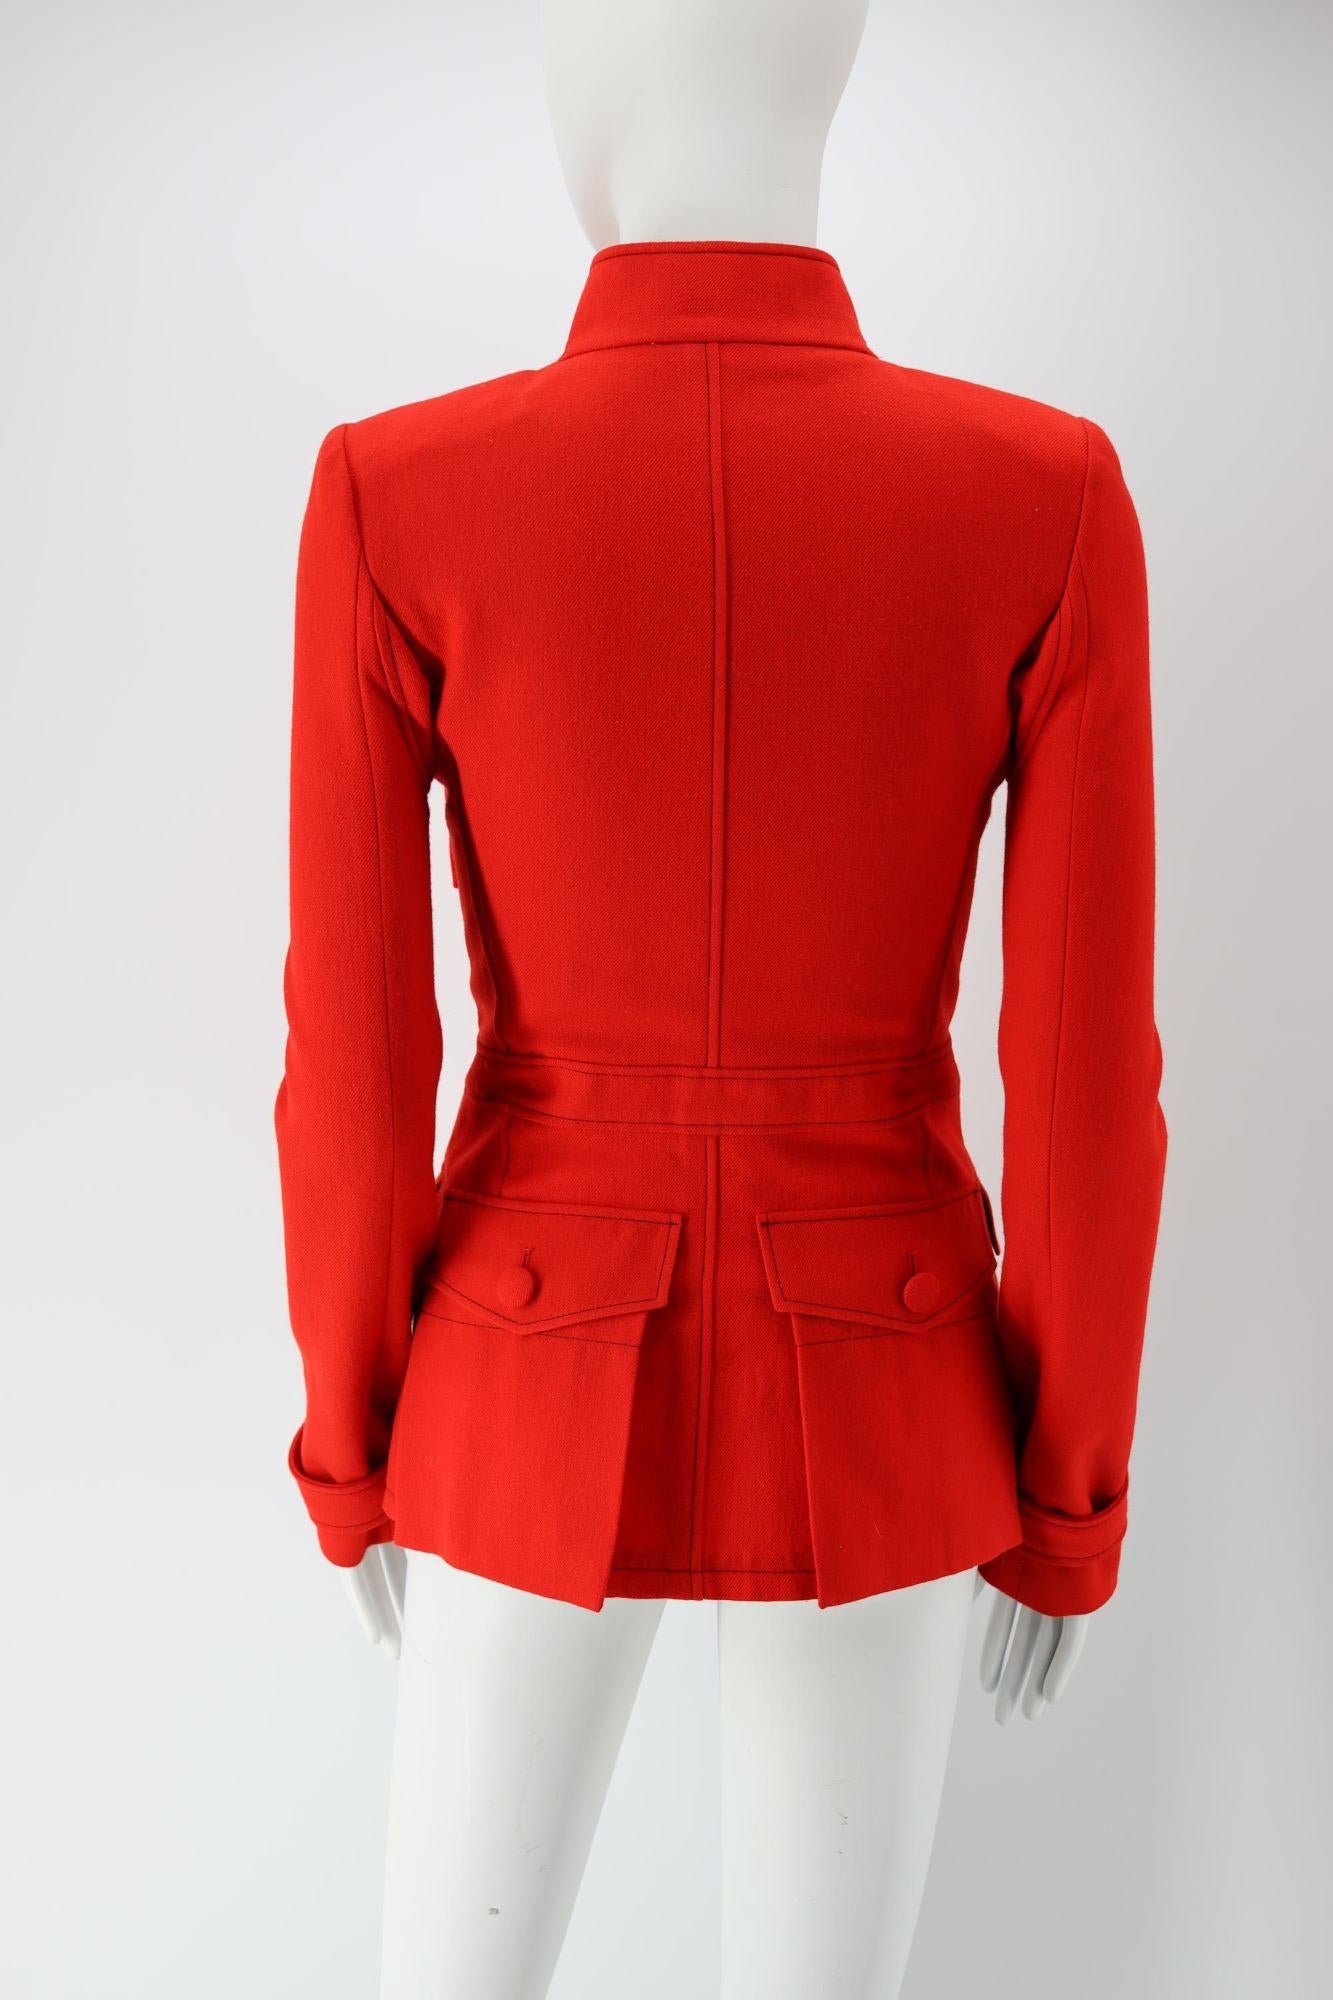 

- Balenciaga von Nicolas Ghesquiere
- Wolljacke in einem leuchtenden Rot
- Taschen auf der Rückseite und Vorderseite
- Riemen um das Handgelenk
- Mao-Kragen
- Ausgezeichneter Zustand, leichte Gebrauchs- und Abnutzungsspuren, aber nichts